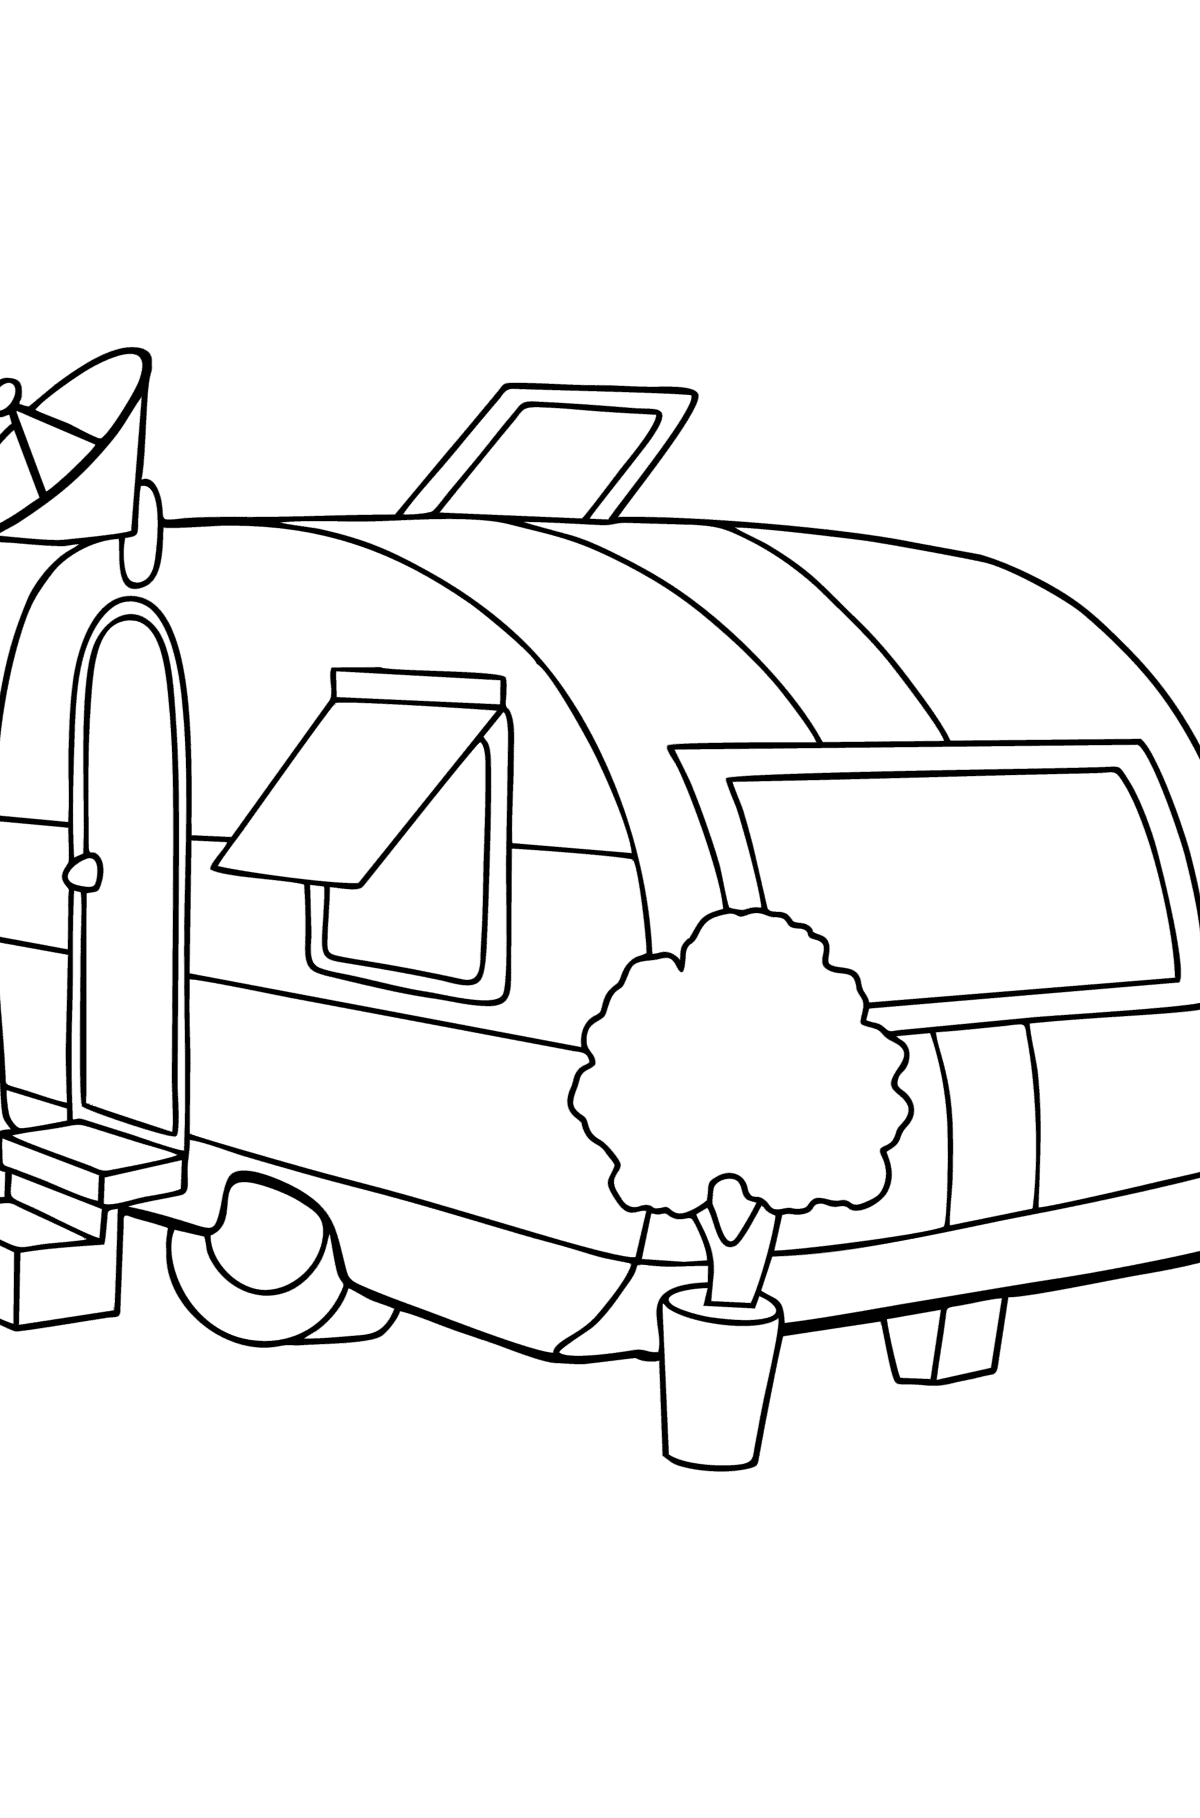 Coloriage Camping-car - Coloriages pour les Enfants